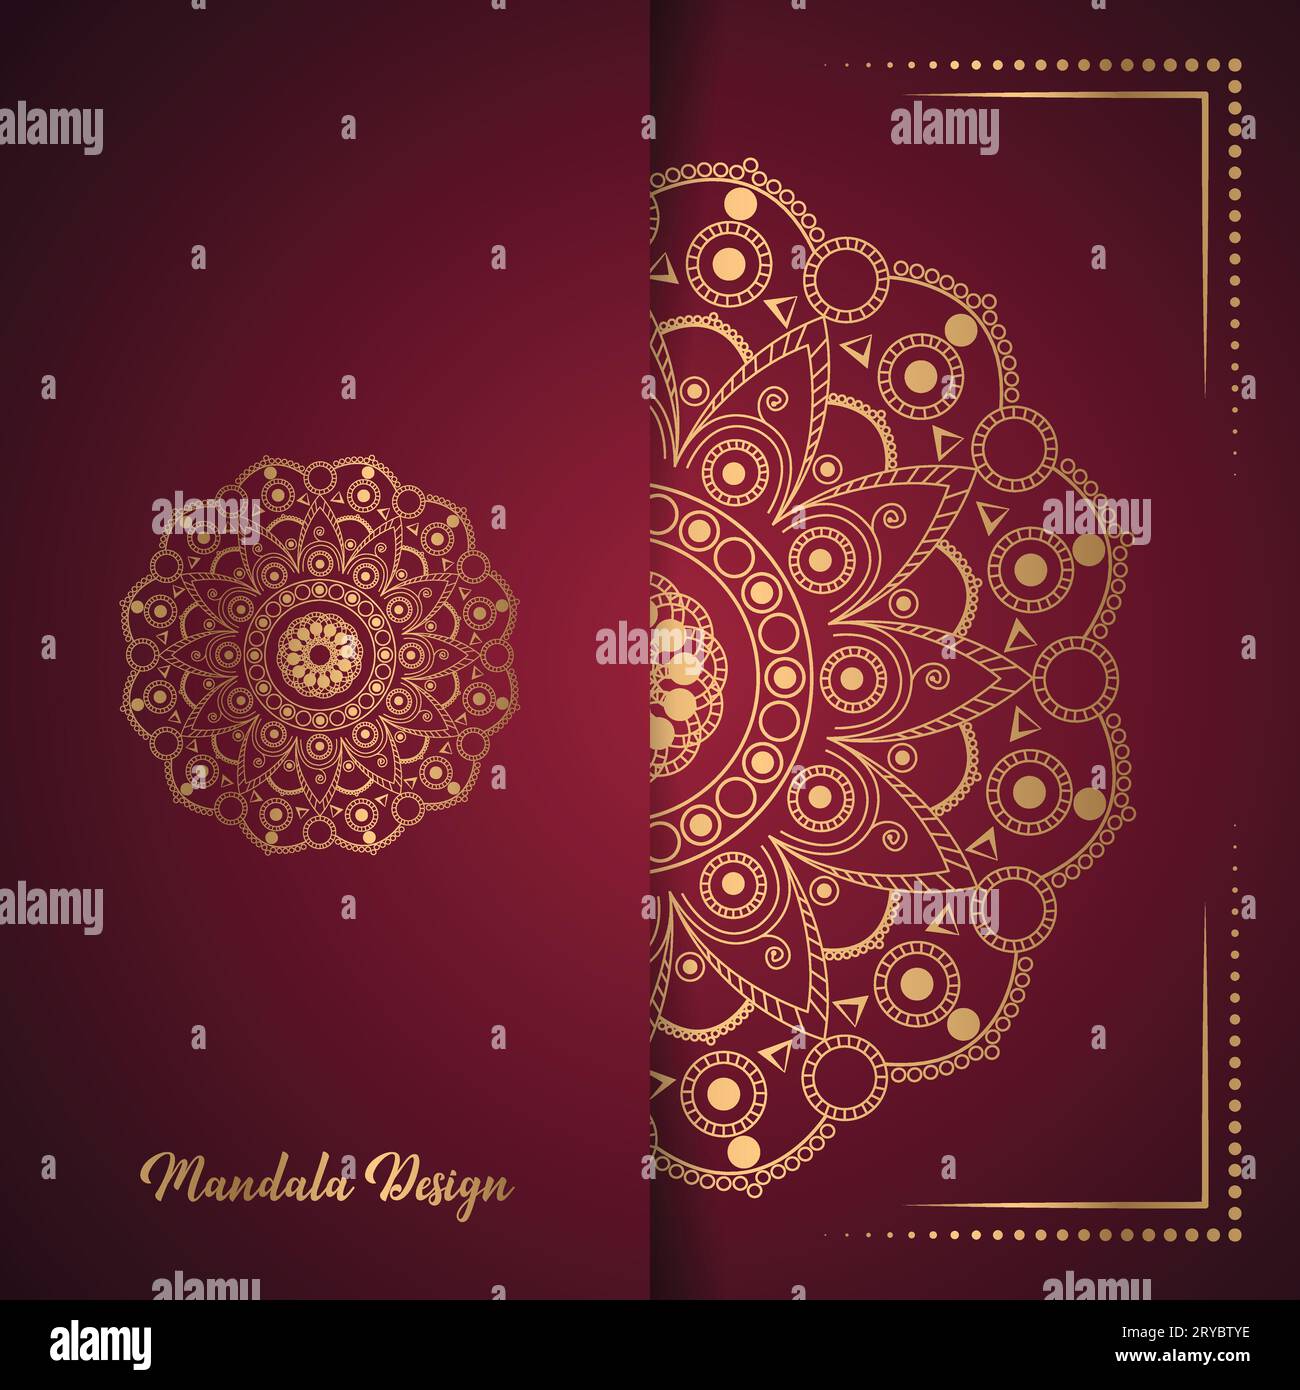 Vecteur fond de mandala ornemental de luxe avec motif arabesque doré design islamique arabe Illustration de Vecteur